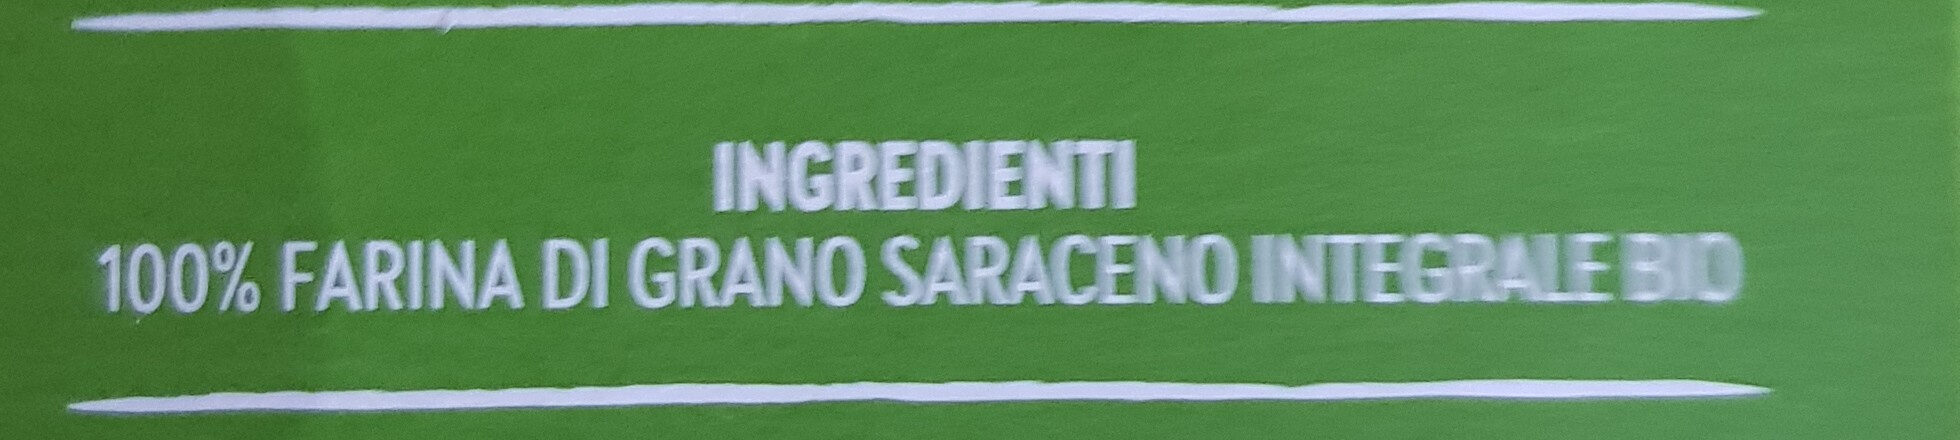 Fusilli di Grano Saraceno Integrale - Ingredienti - it